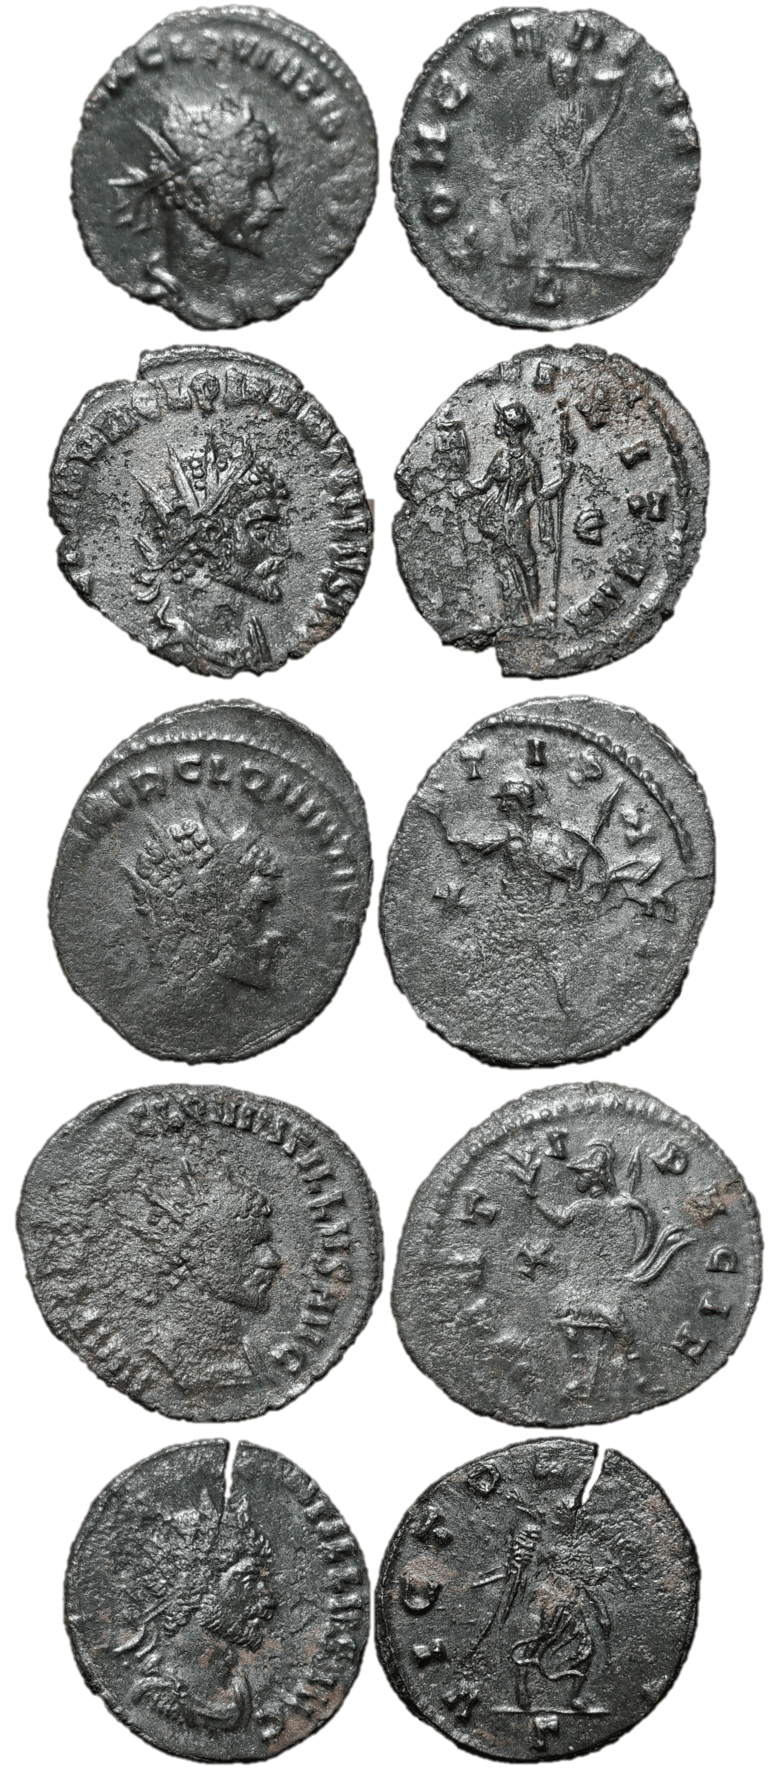 quintillus coins-min (2).png